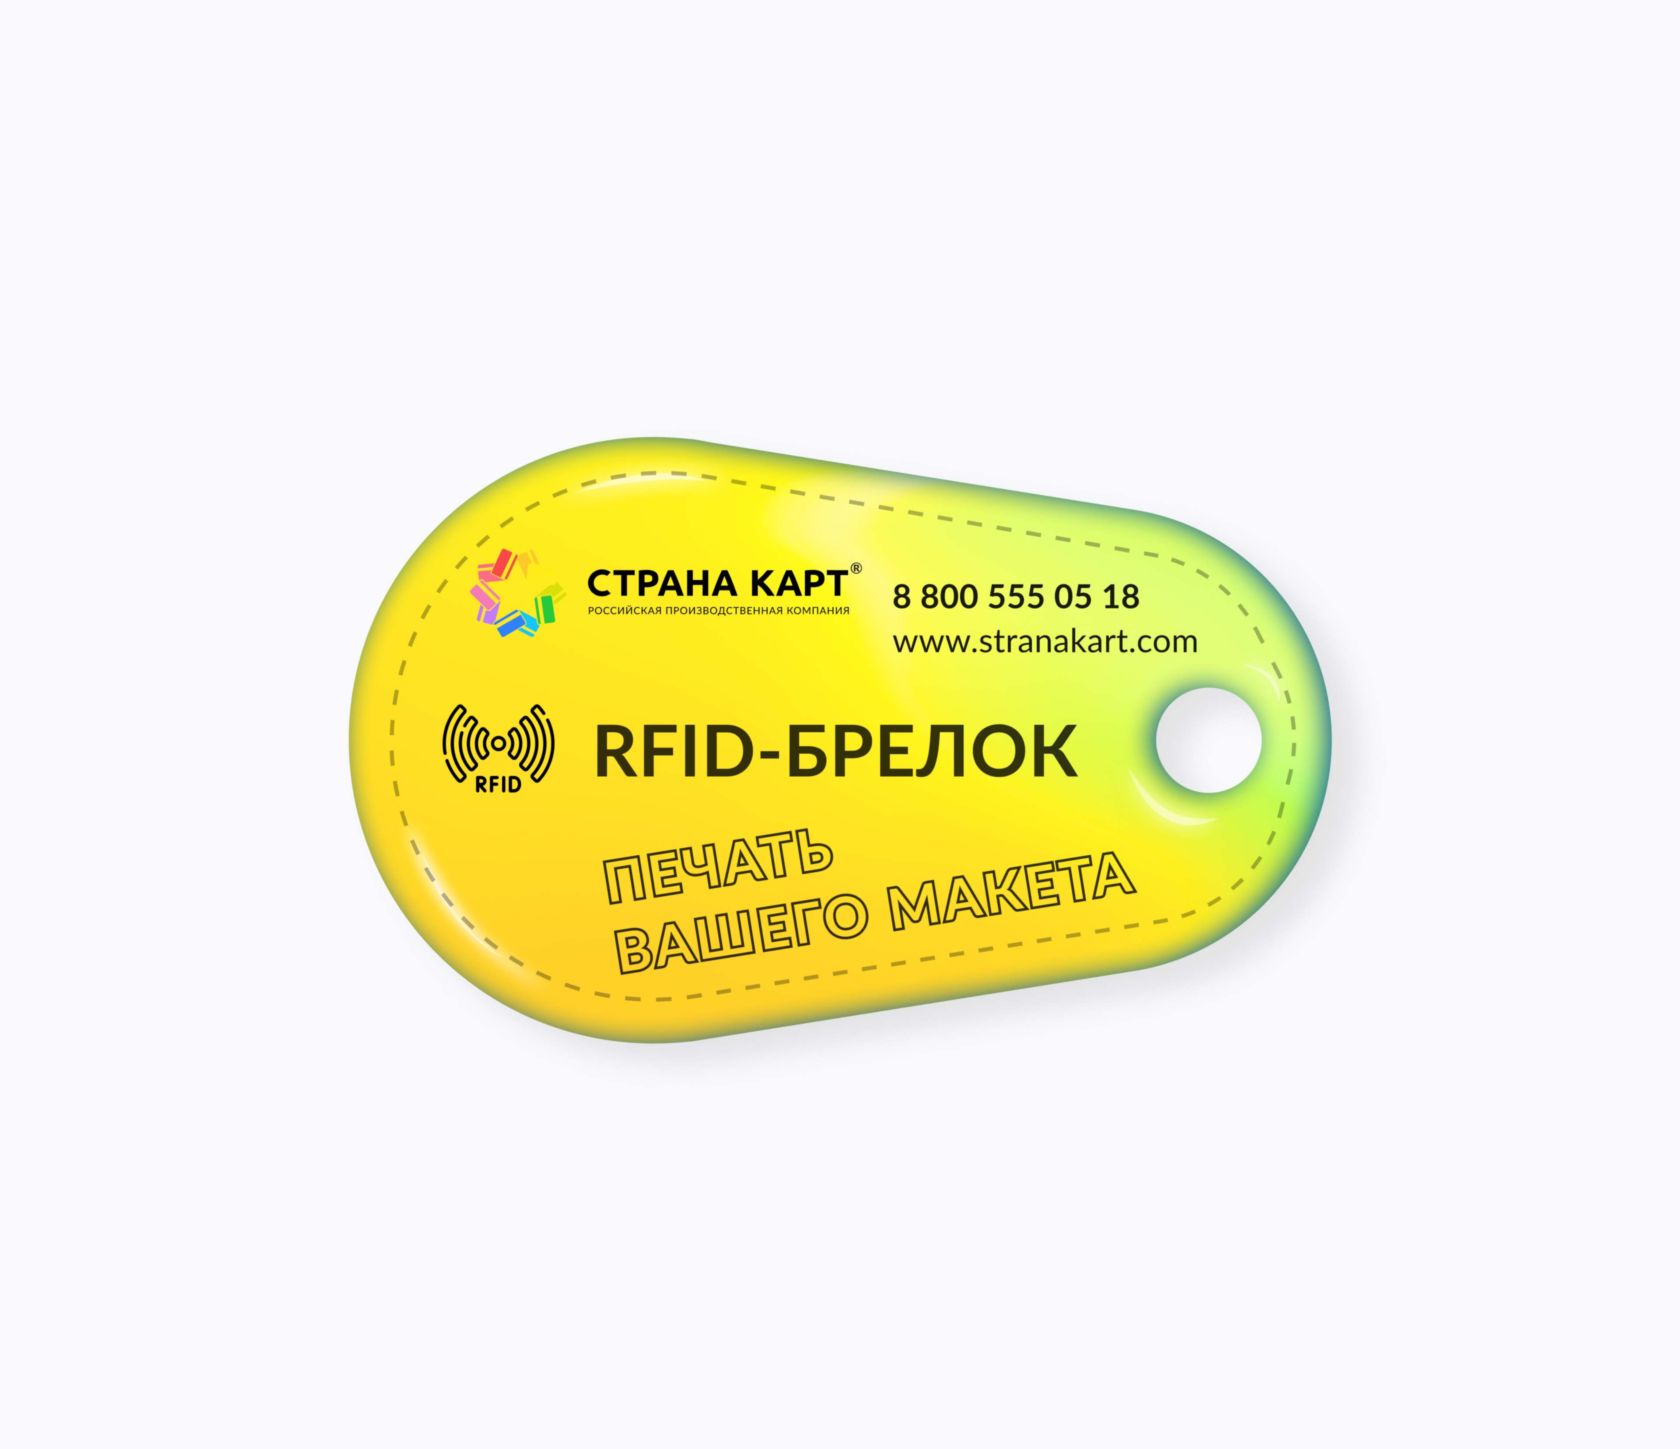 Каплевидные RFID-брелоки NEOKEY® с чипом для библиотек RFID-Брелок NEOKEY® с чипом для библиотеки